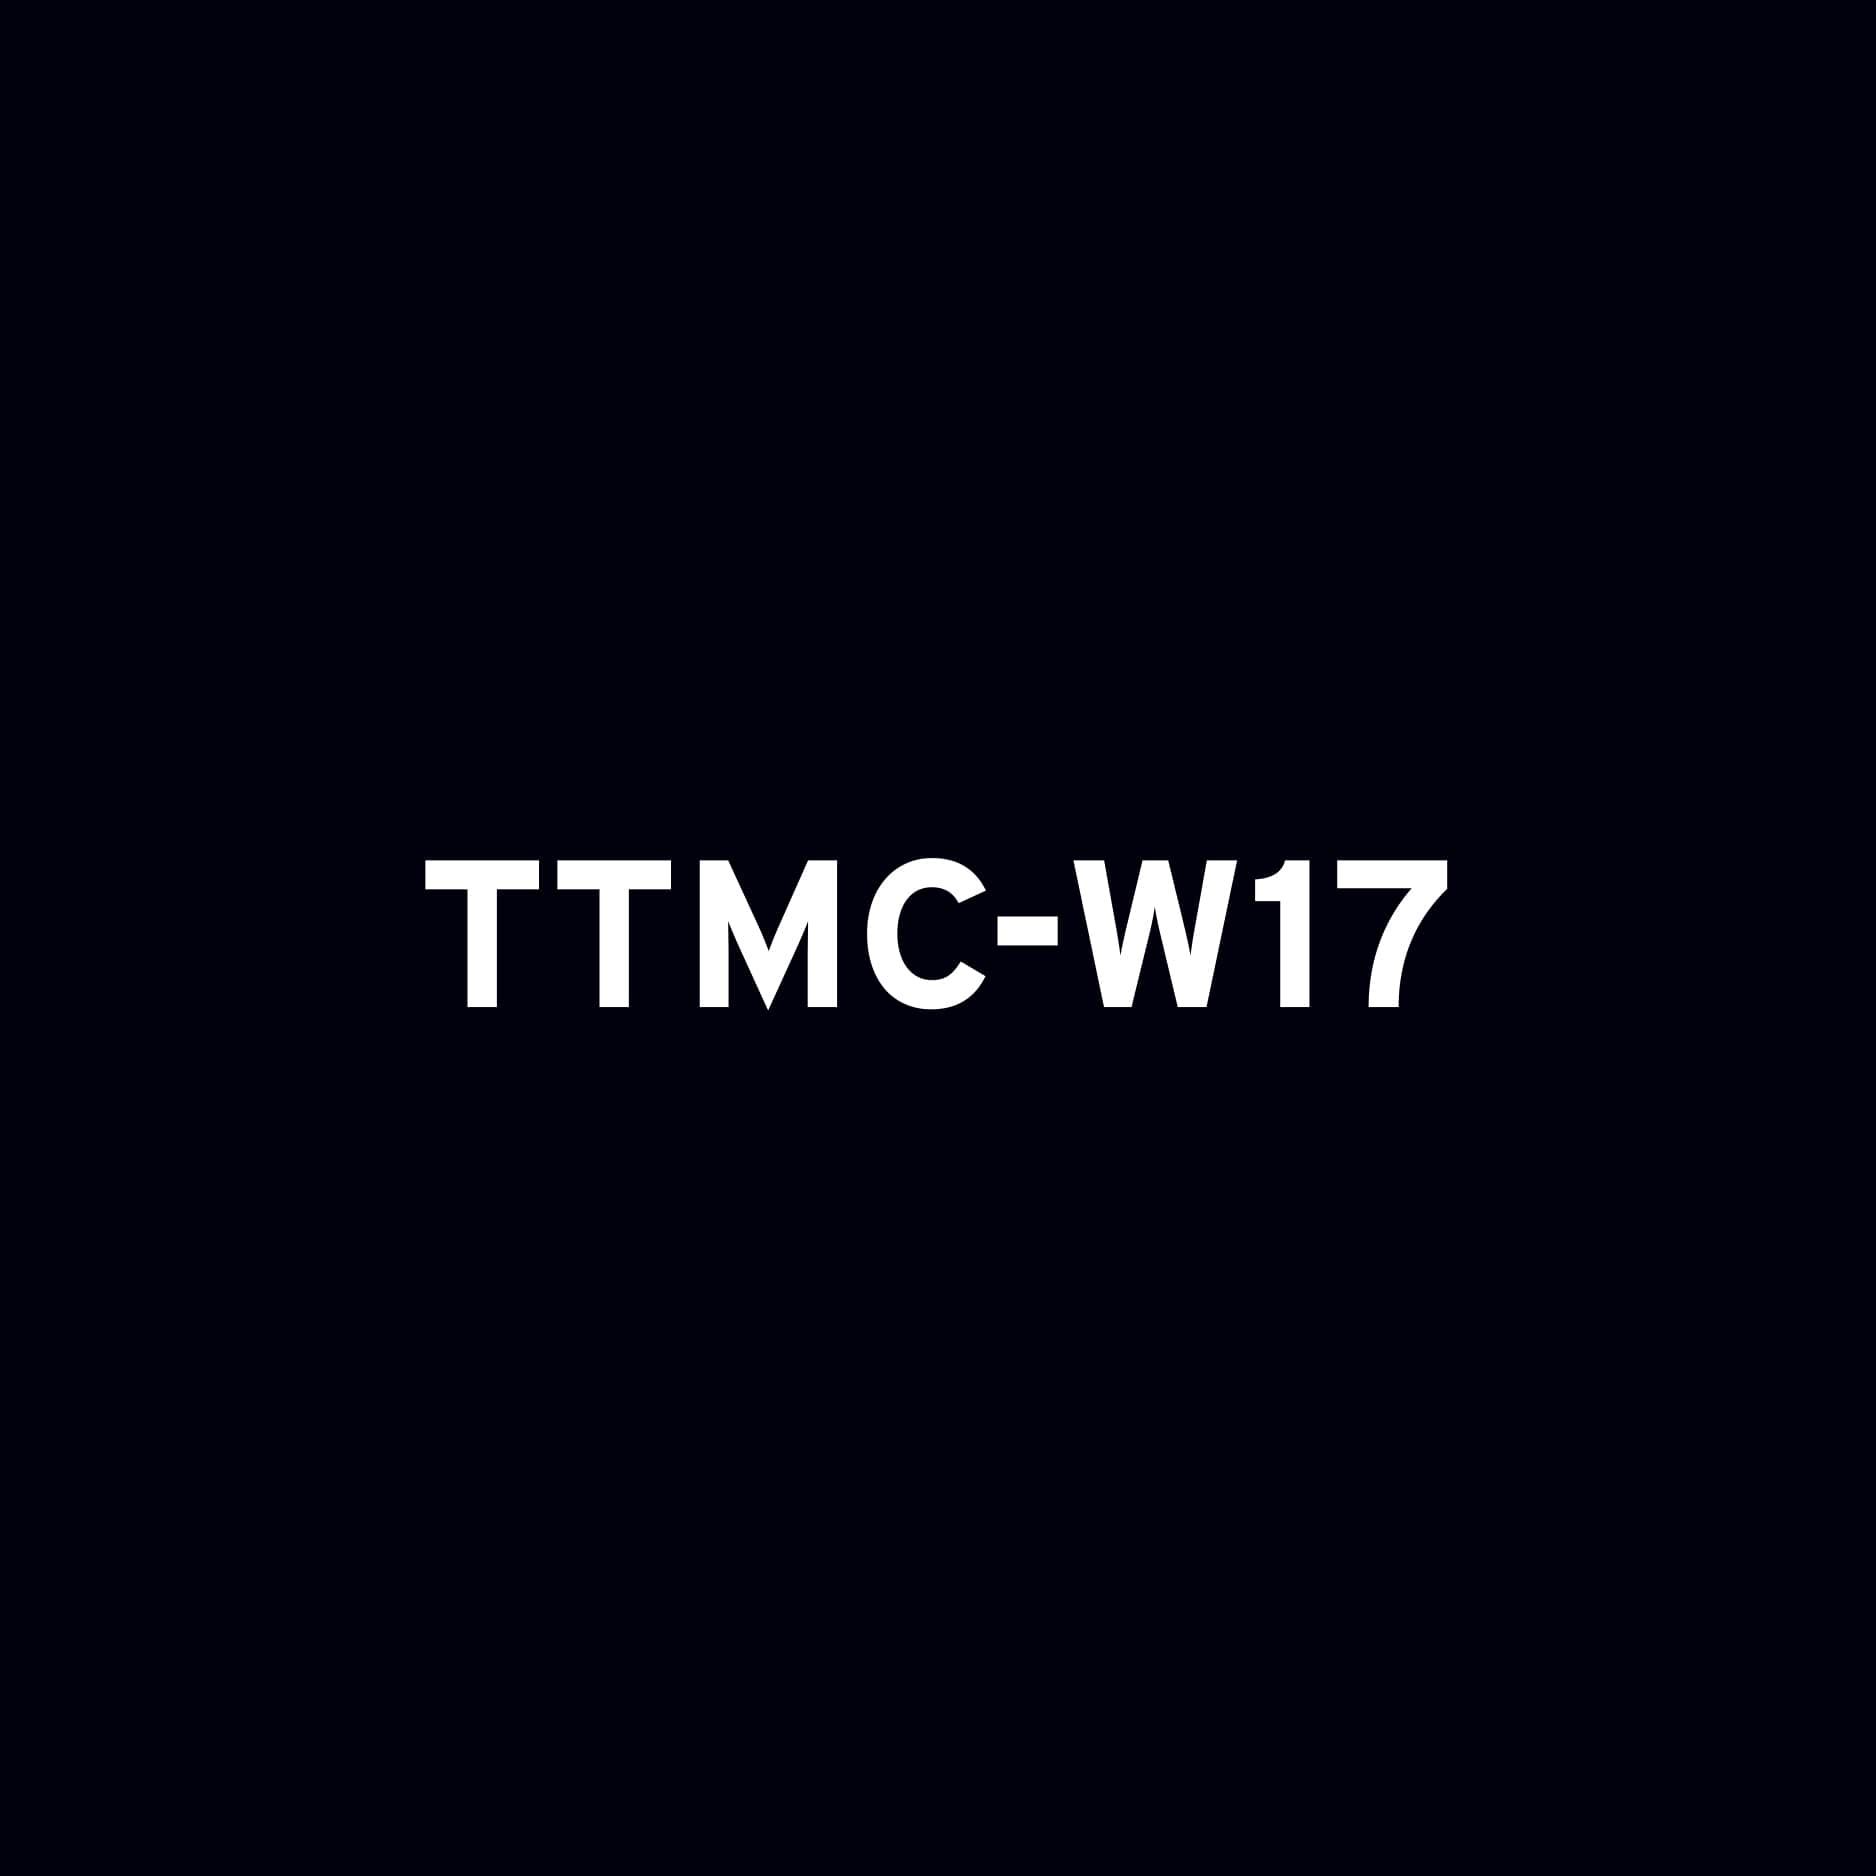 TTMC-W17